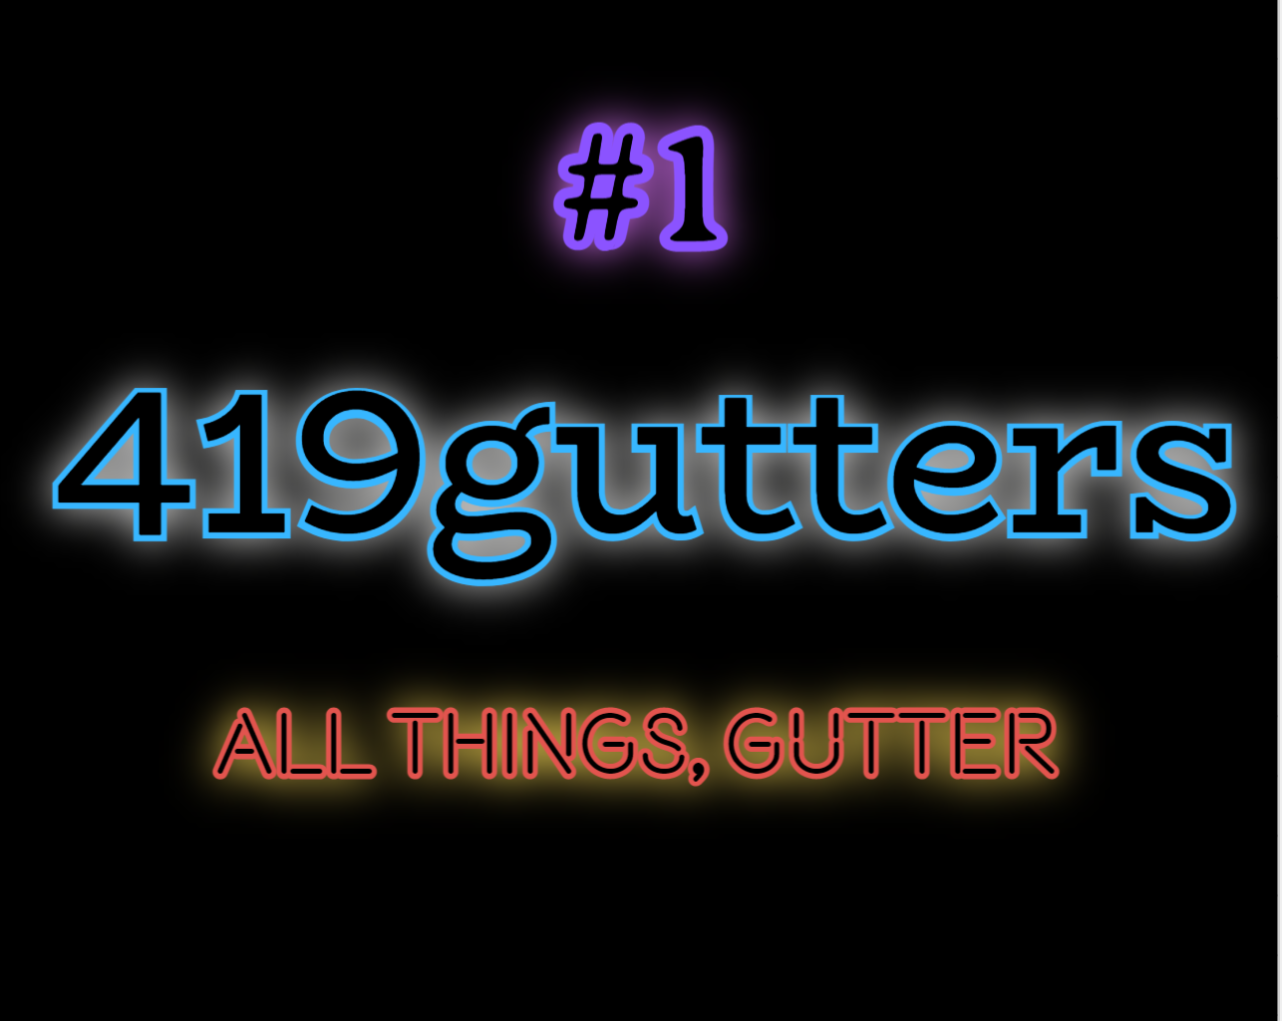 419 Gutters Logo